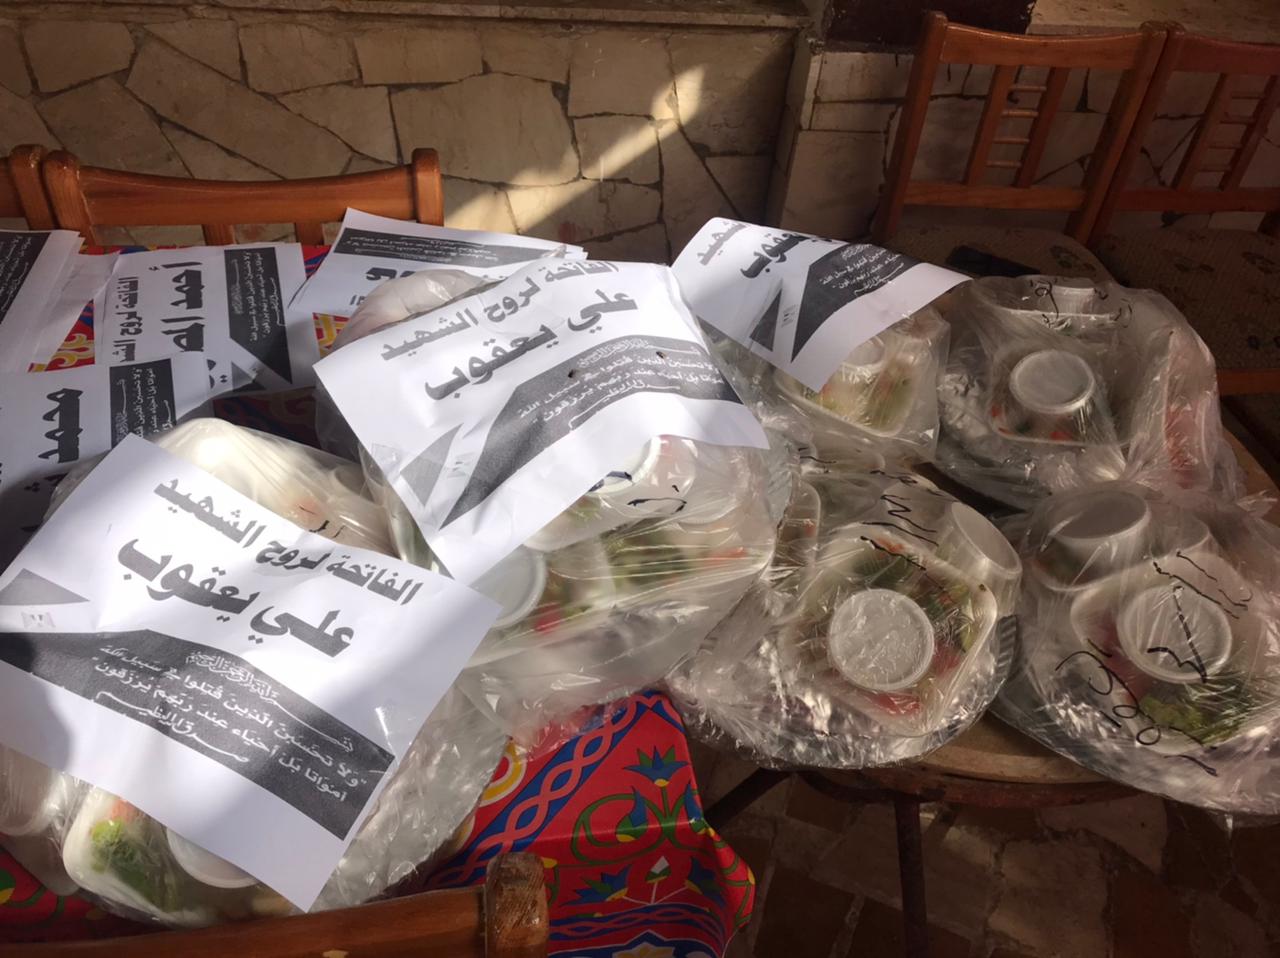 فاقدى بصر بشمال سيناء يحتفلون بعيد تحرير سيناء بتوزيع وجبات افطار على ارواح الشهداء (2)